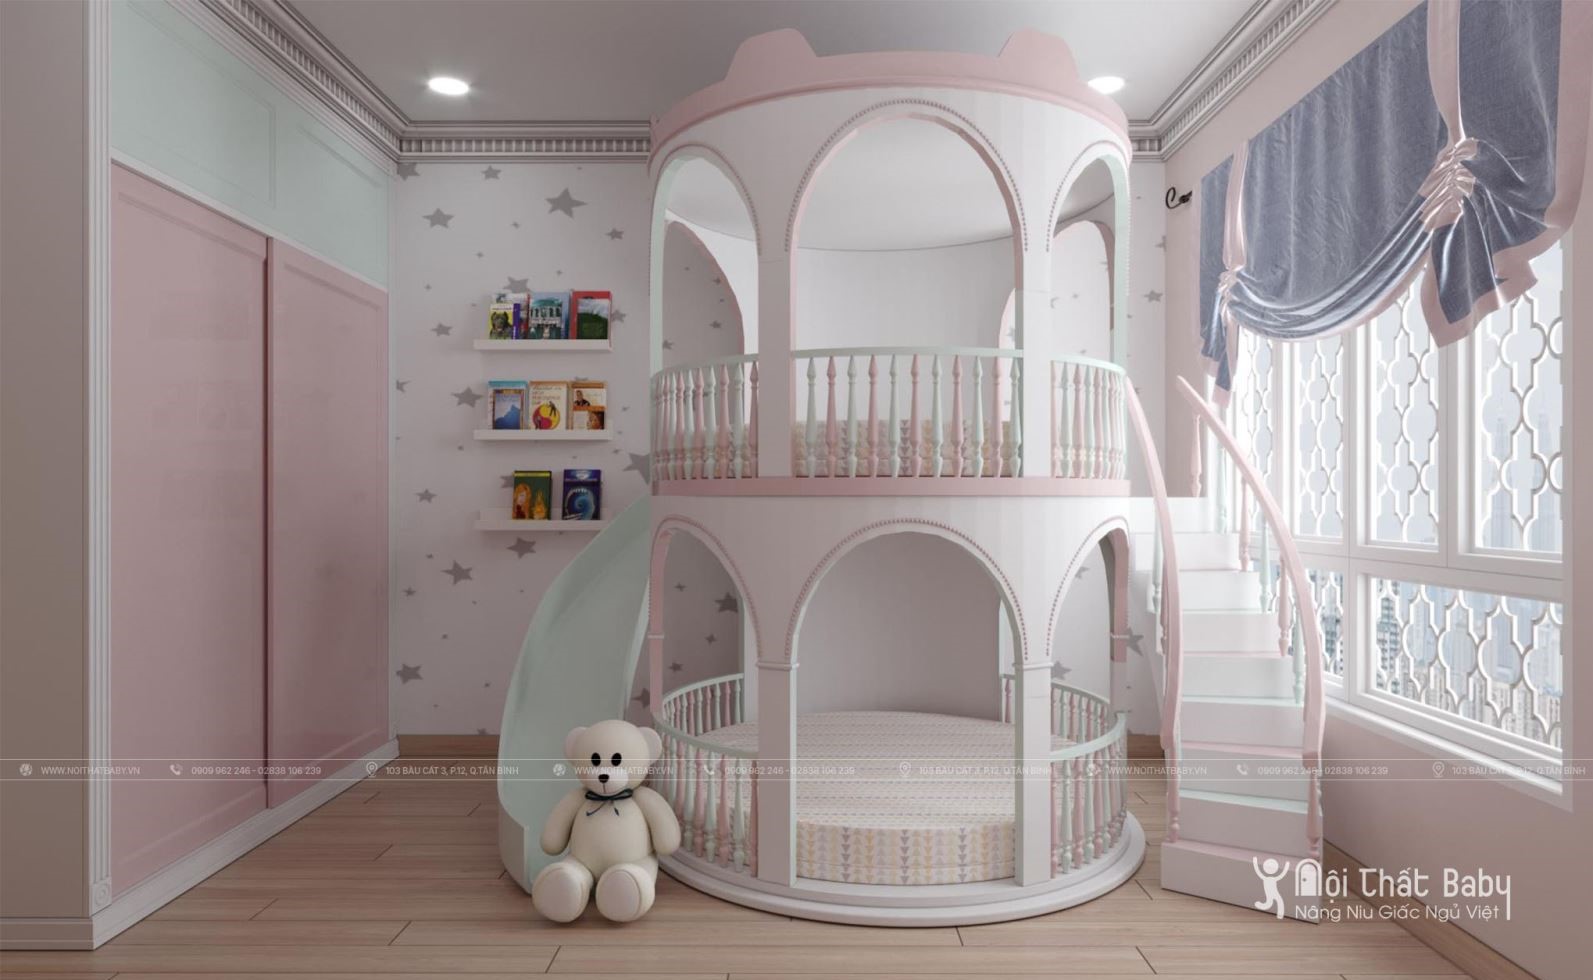 3 gợi ý thiết kế giường tầng cho bé tuyệt đẹp năm 2020